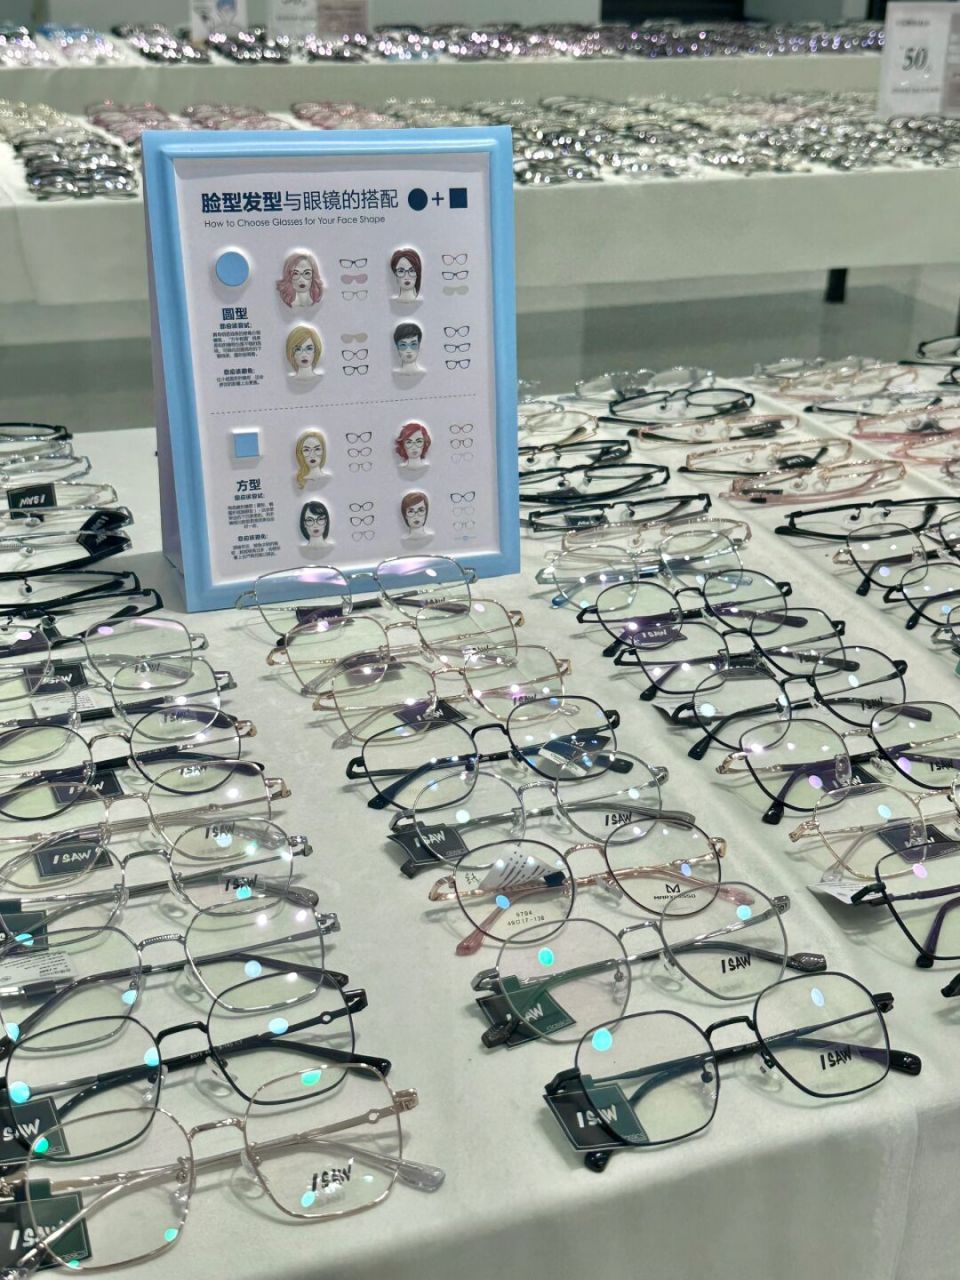 青岛最便宜的眼镜店 太便宜了,一楼满满的眼镜和墨镜都是50r 验光的